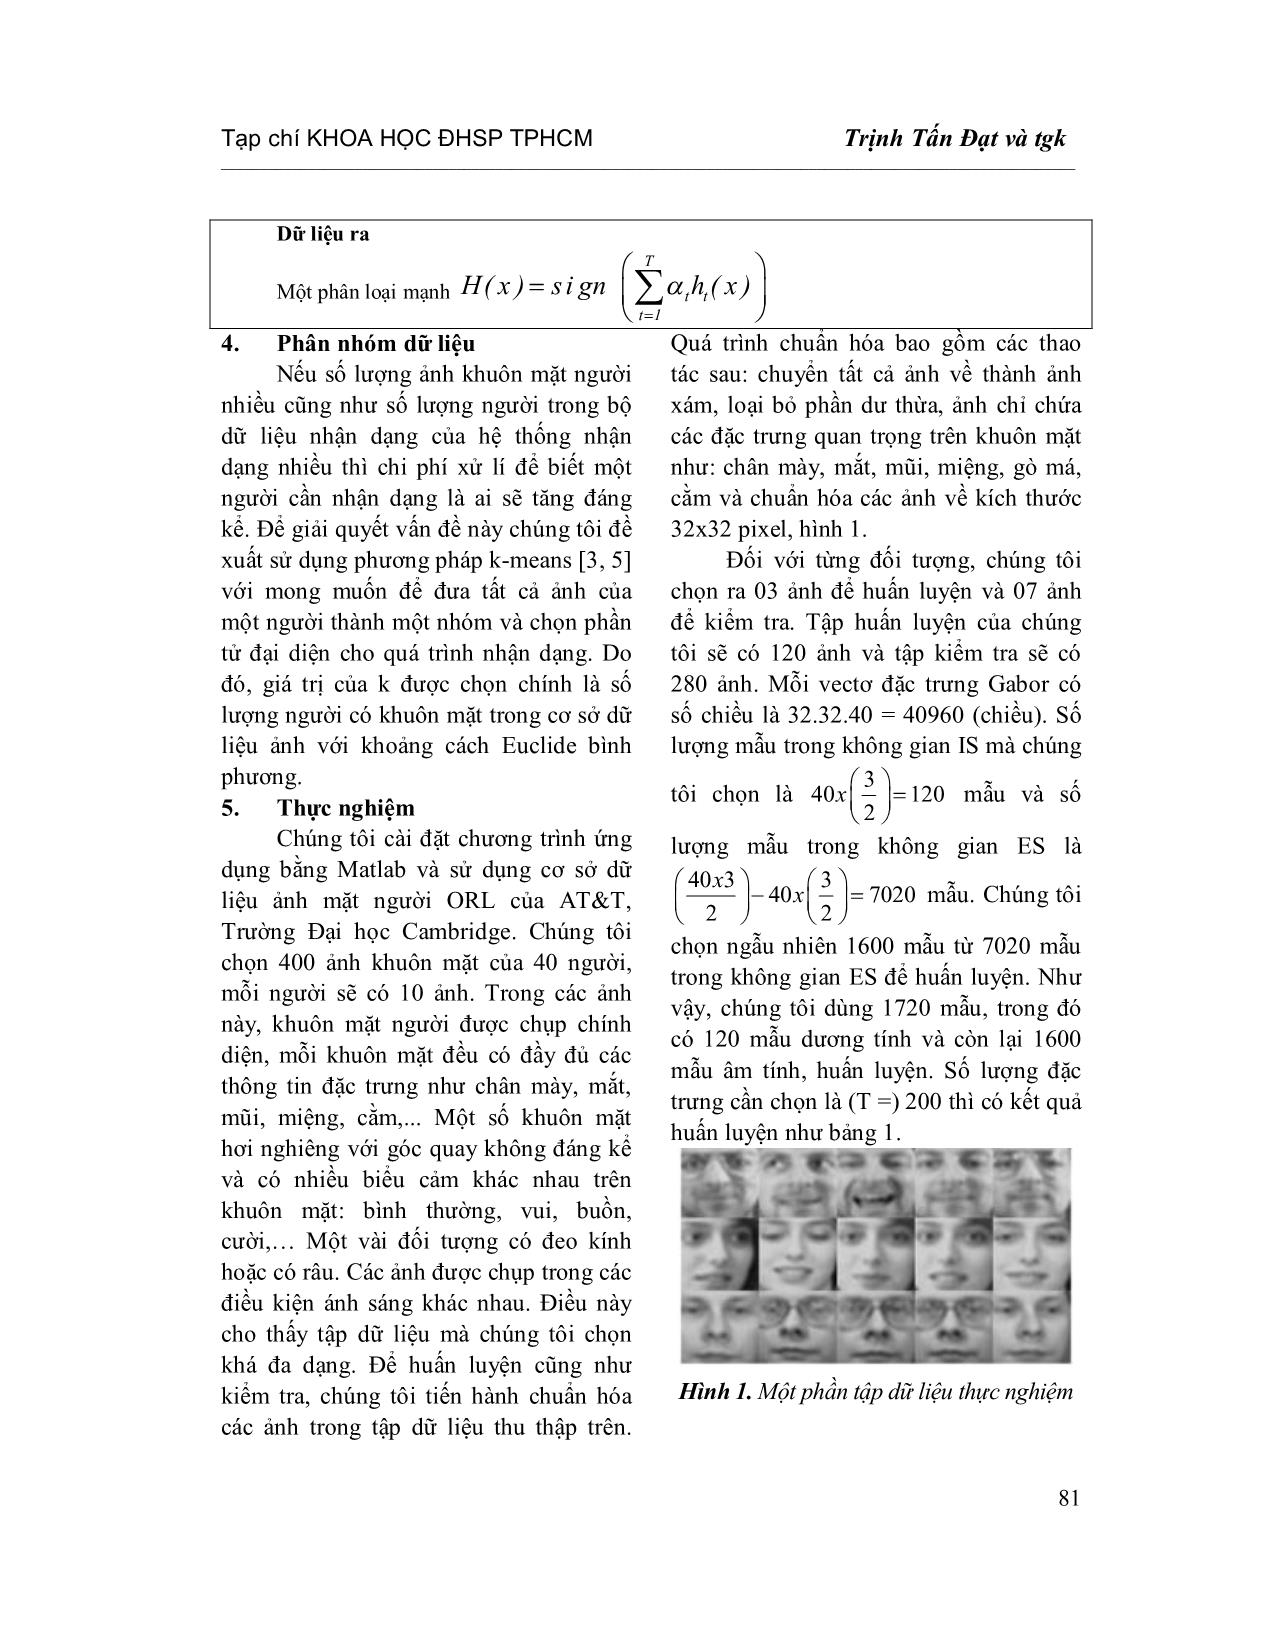 Dùng đặc trưng Gabor kết hợp Adaboost và k-Means trong bài toán nhận dạng mặt người trang 5